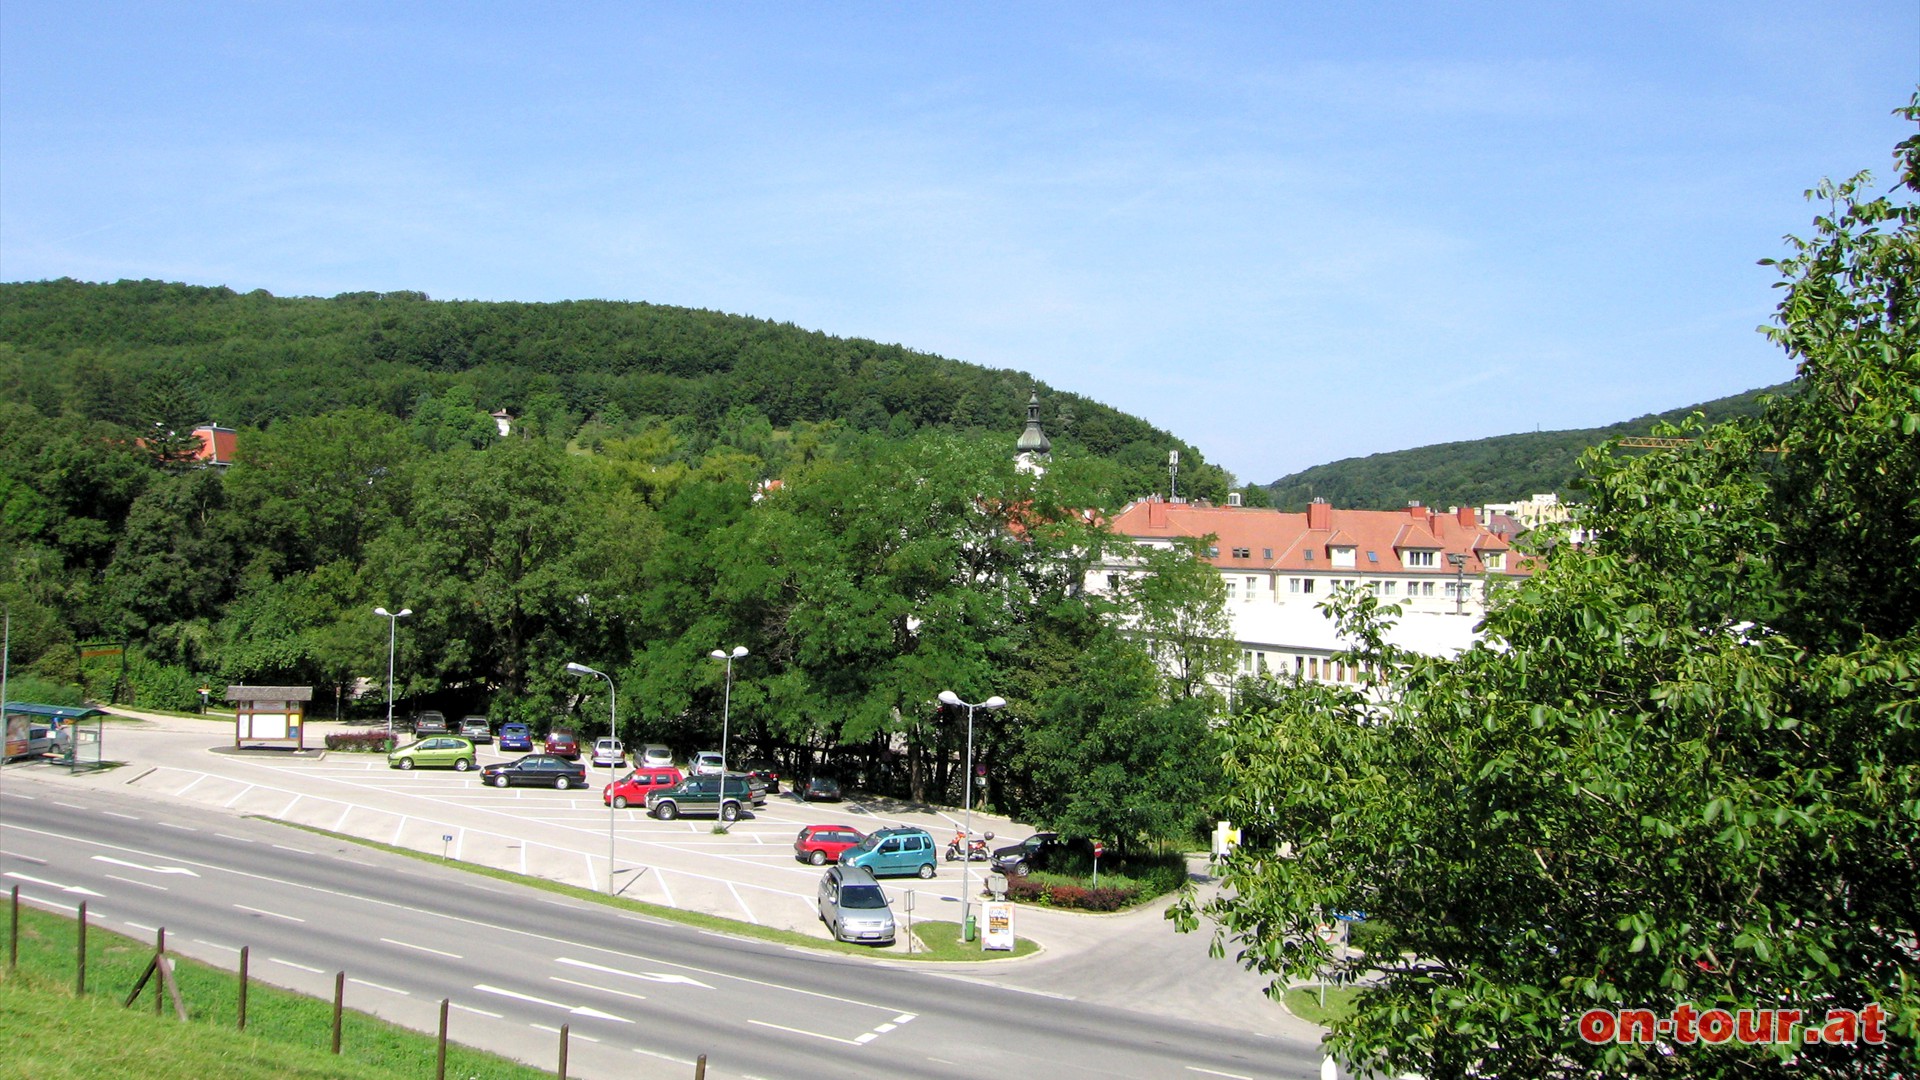 Ausgangspunkt ist der P & R-Parkplatz in Purkersdorf.